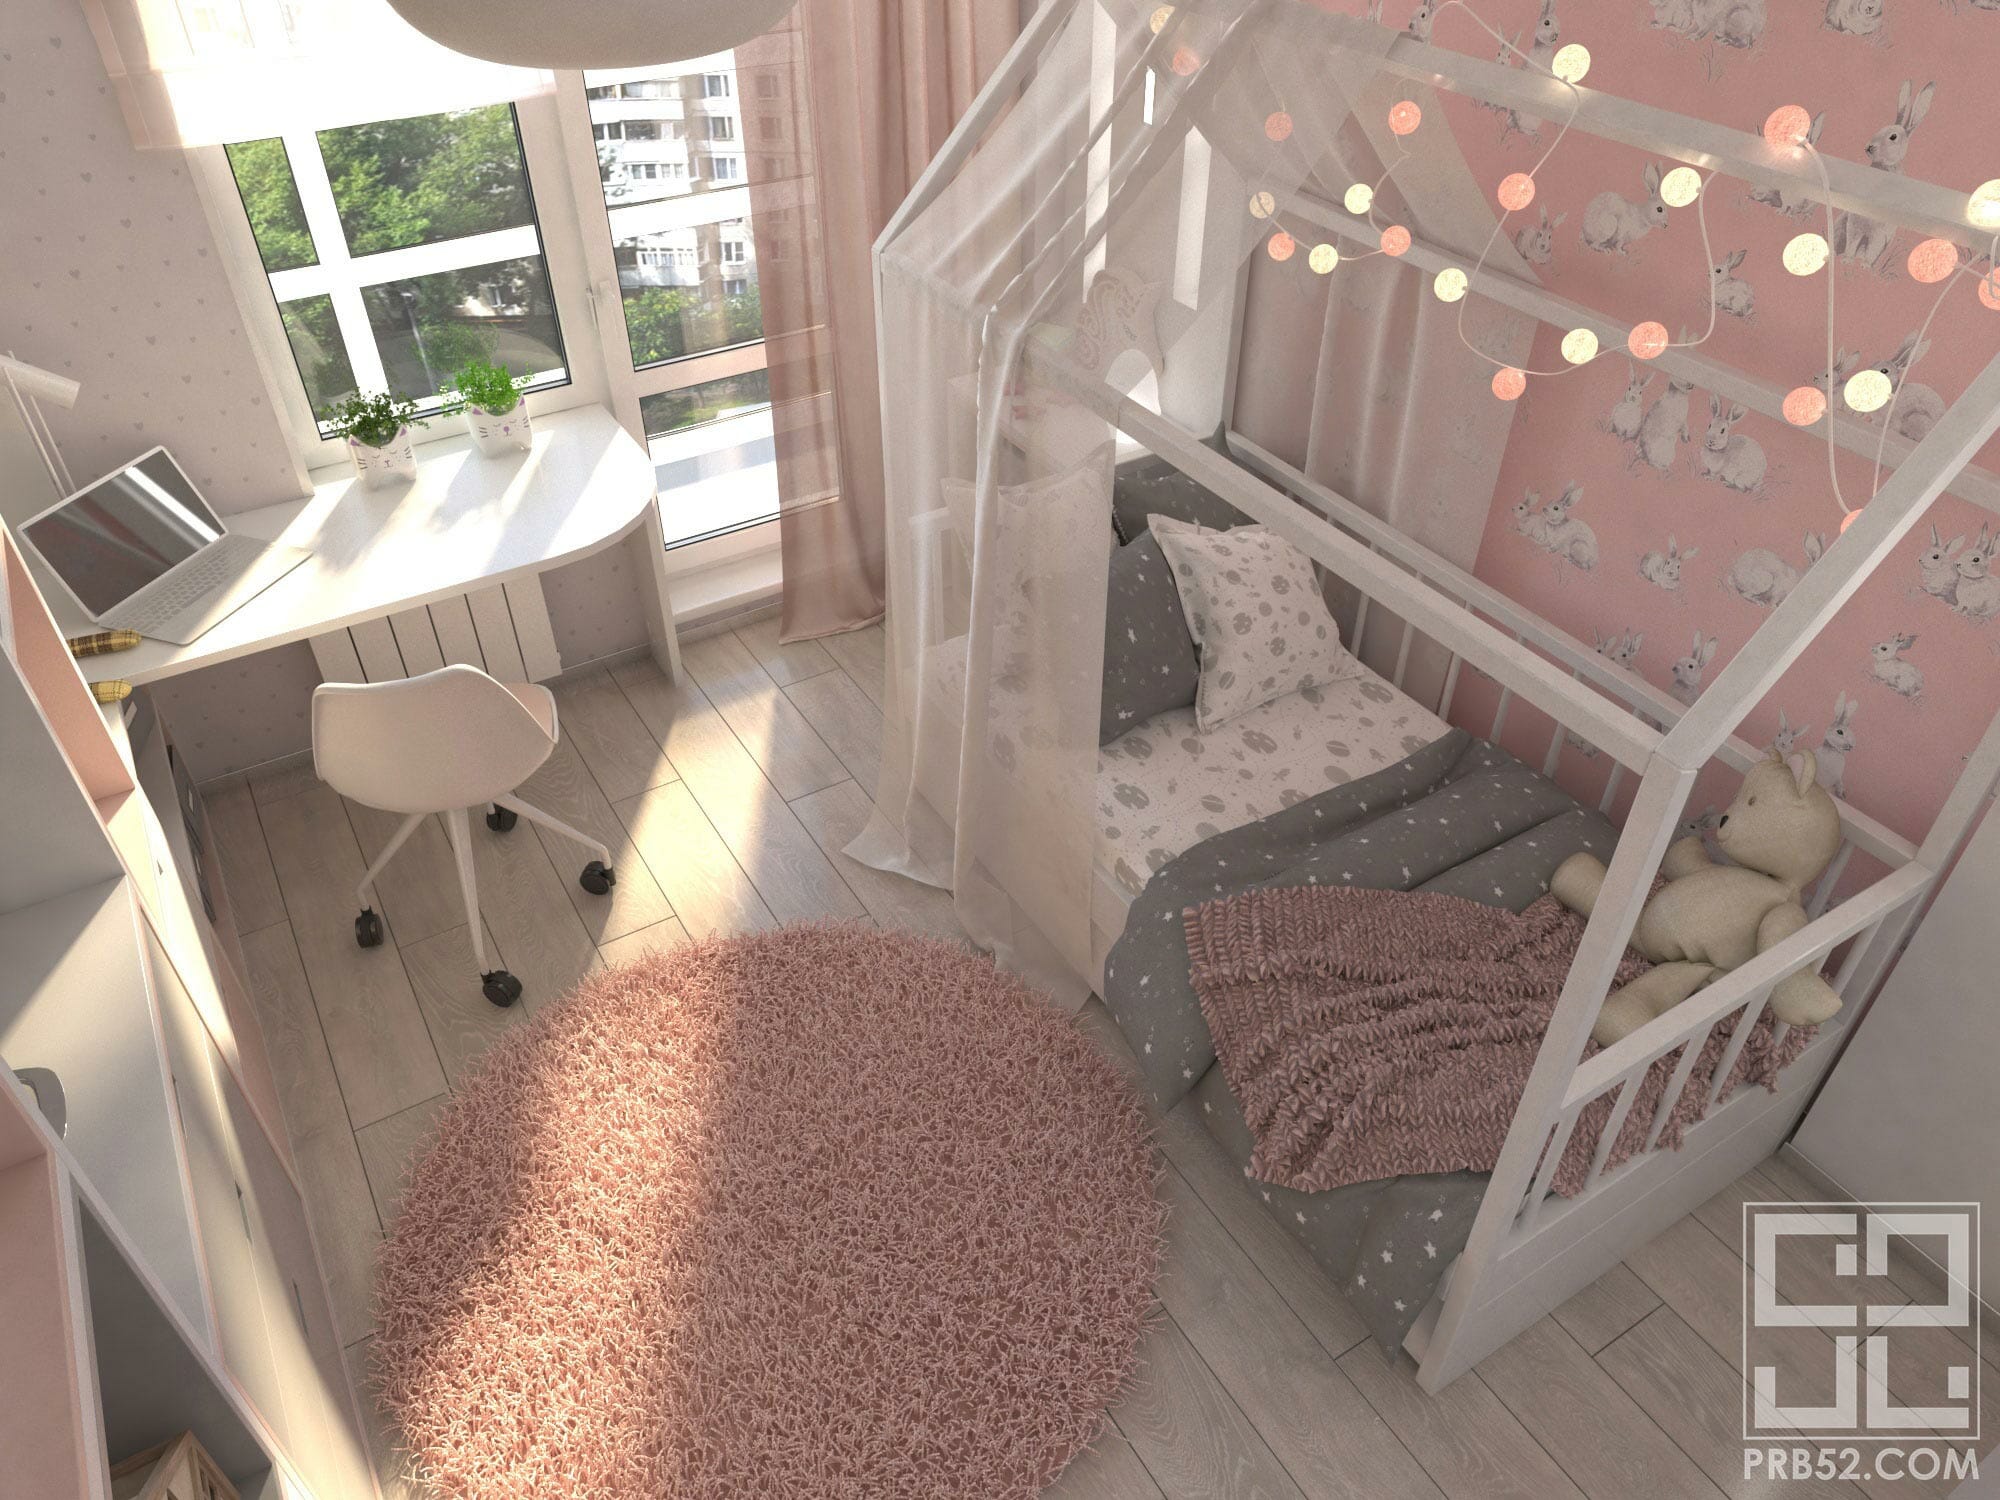 дизайн интерьера детской комнаты для маленькой принцессы